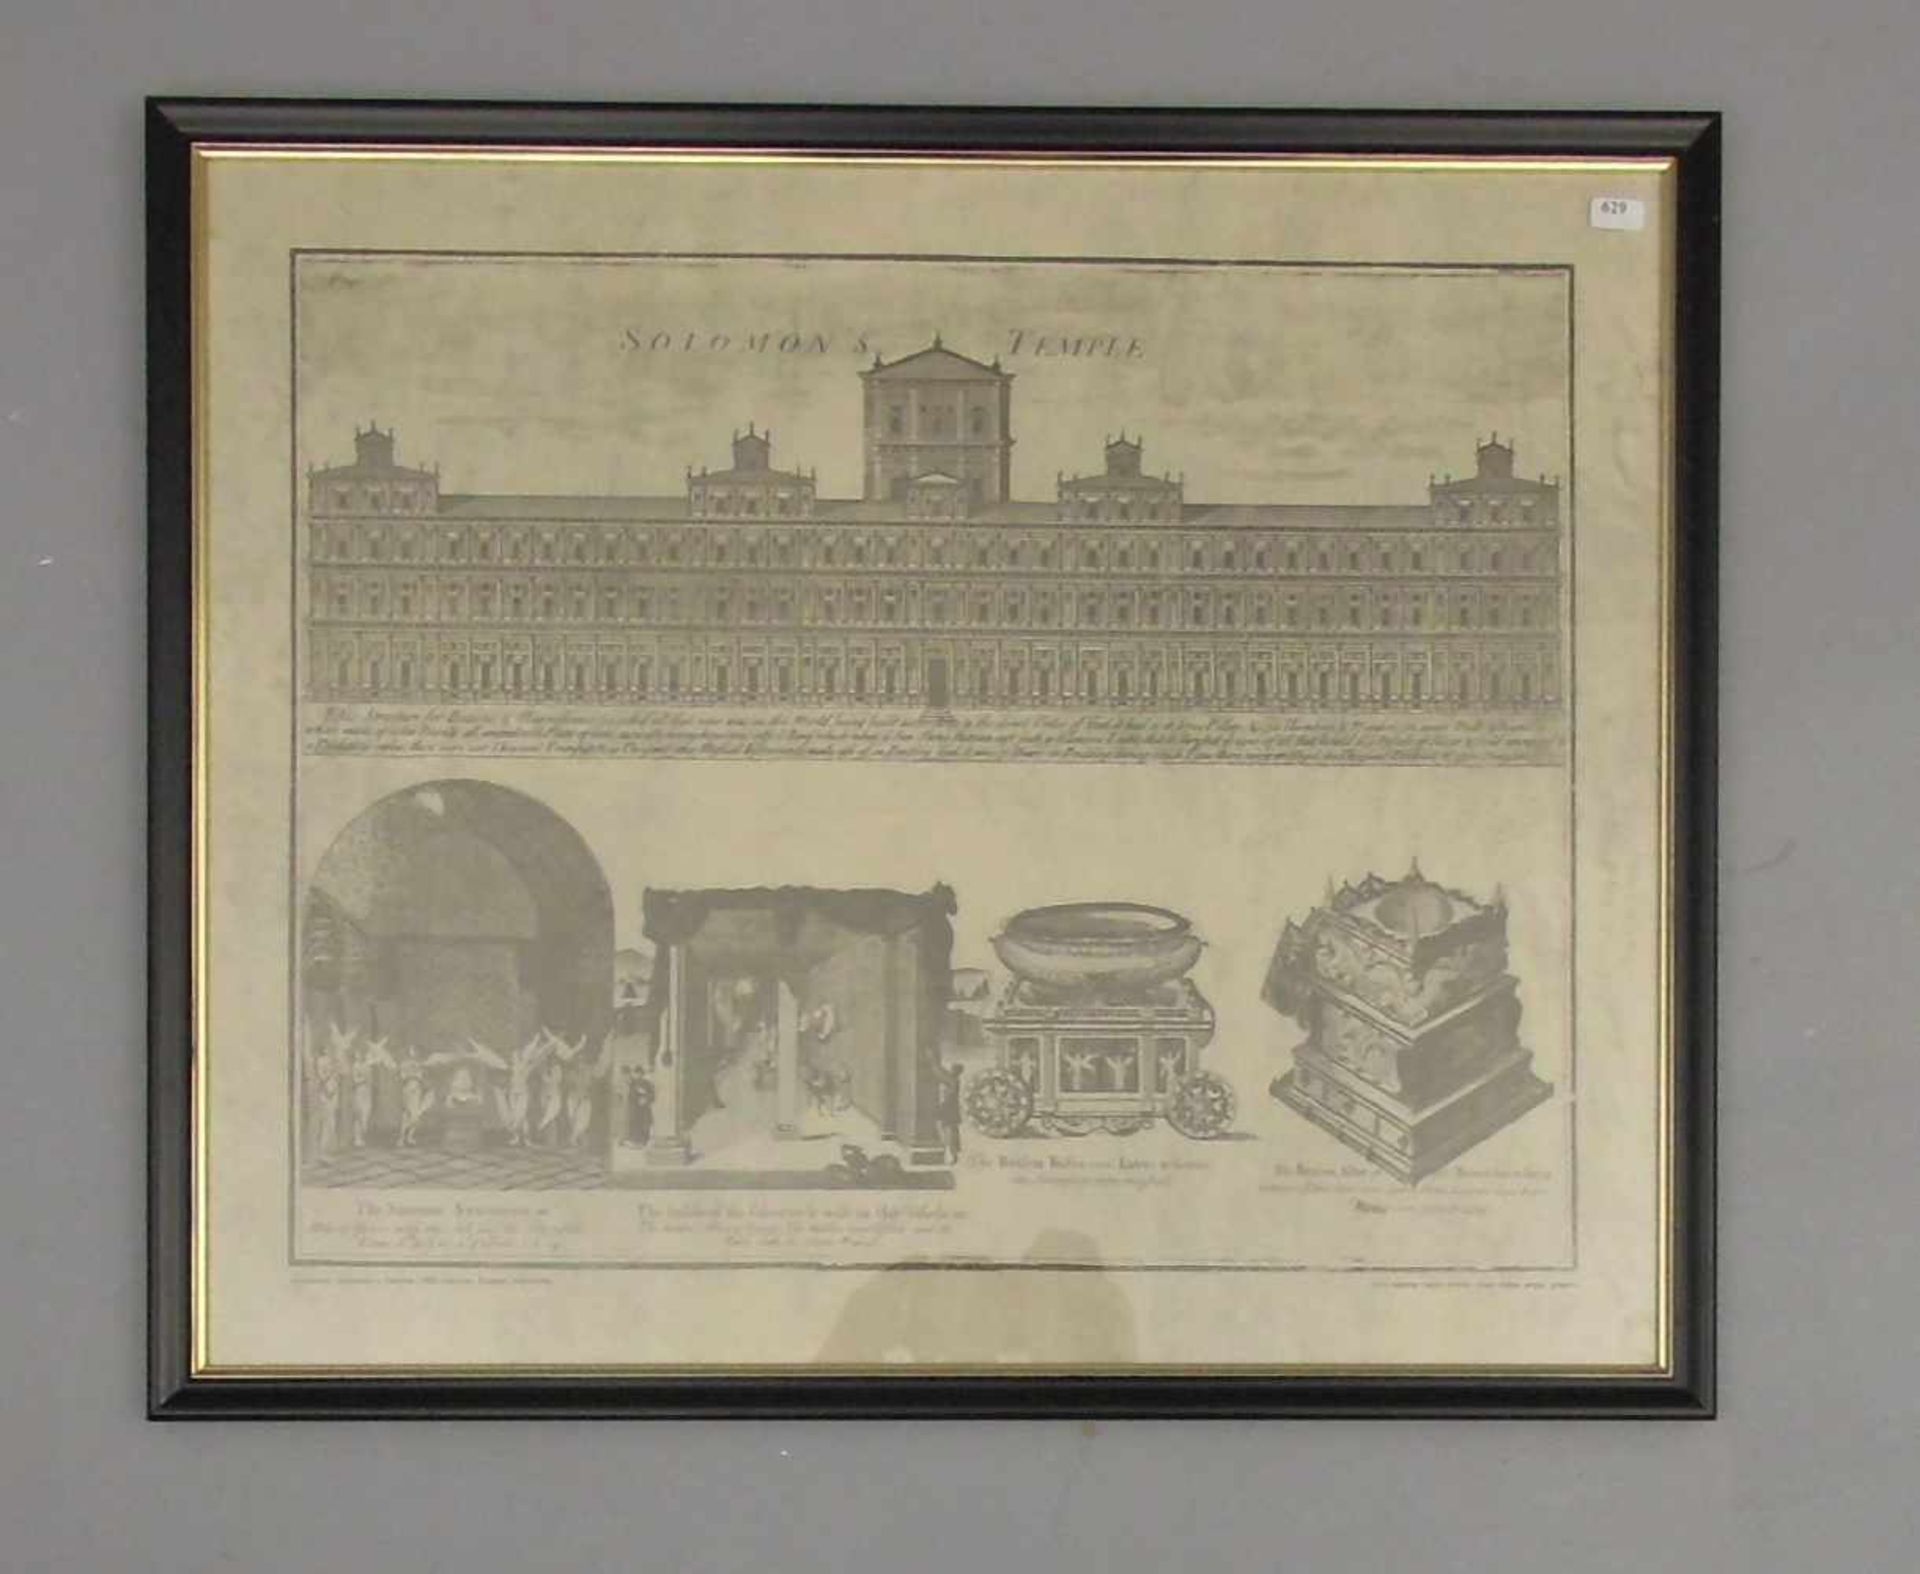 "DER TEMPEL SALOMONS", Serigraphie nach einem Kupferstich des 18. Jh.: "Solomon's Temple", hinter